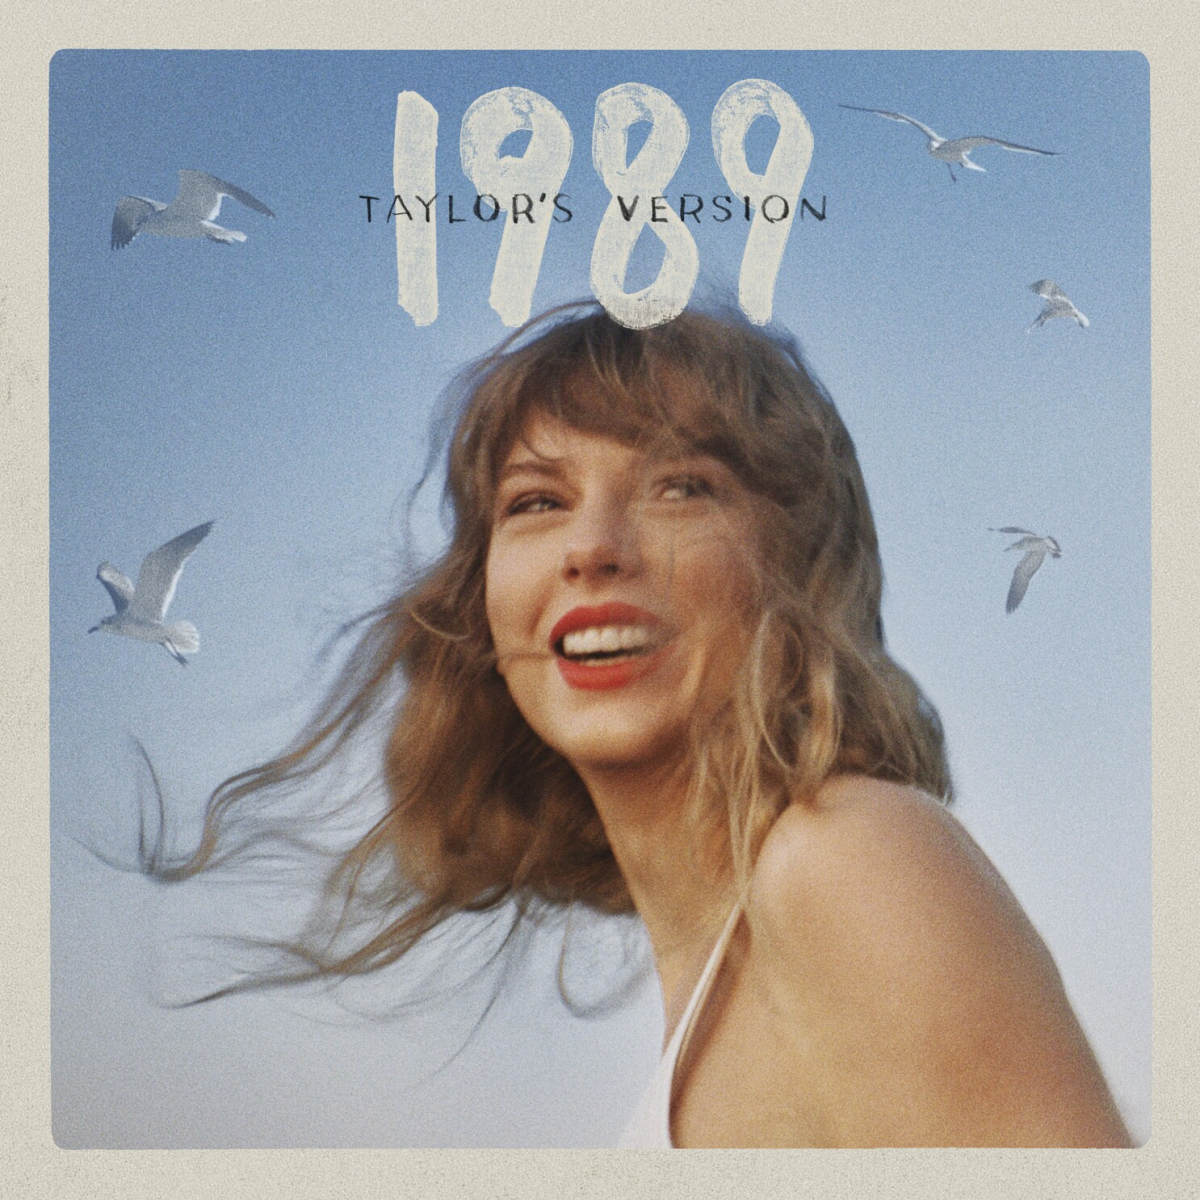 1989 (Taylors Version) ofrece brillantes temas de pop atemporal